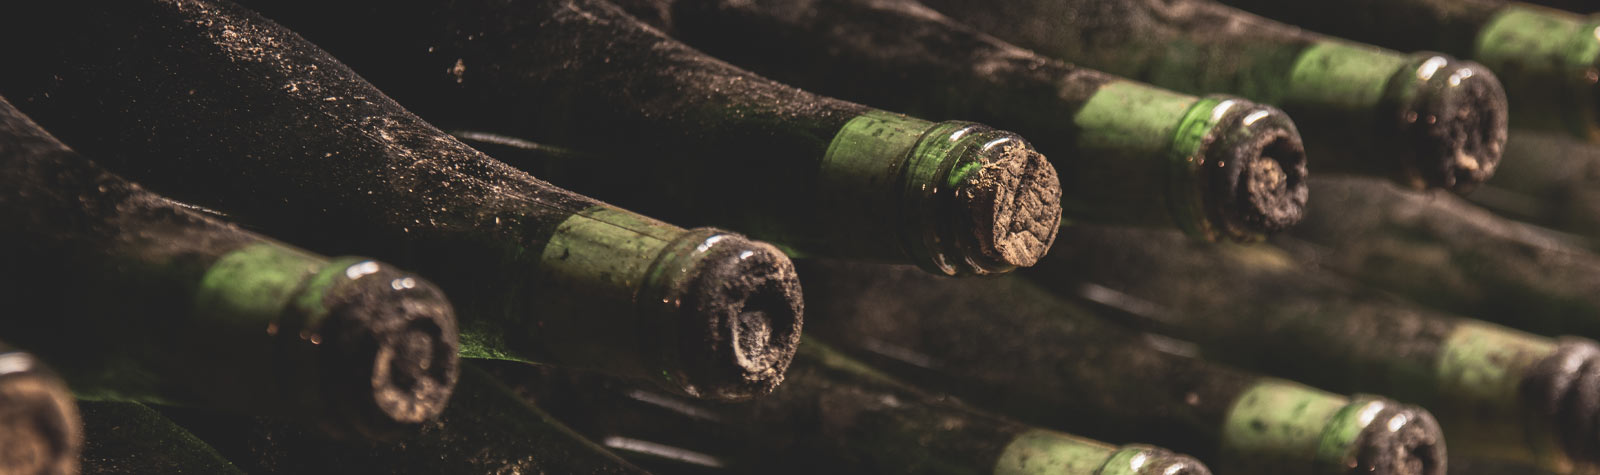 Archivní víno